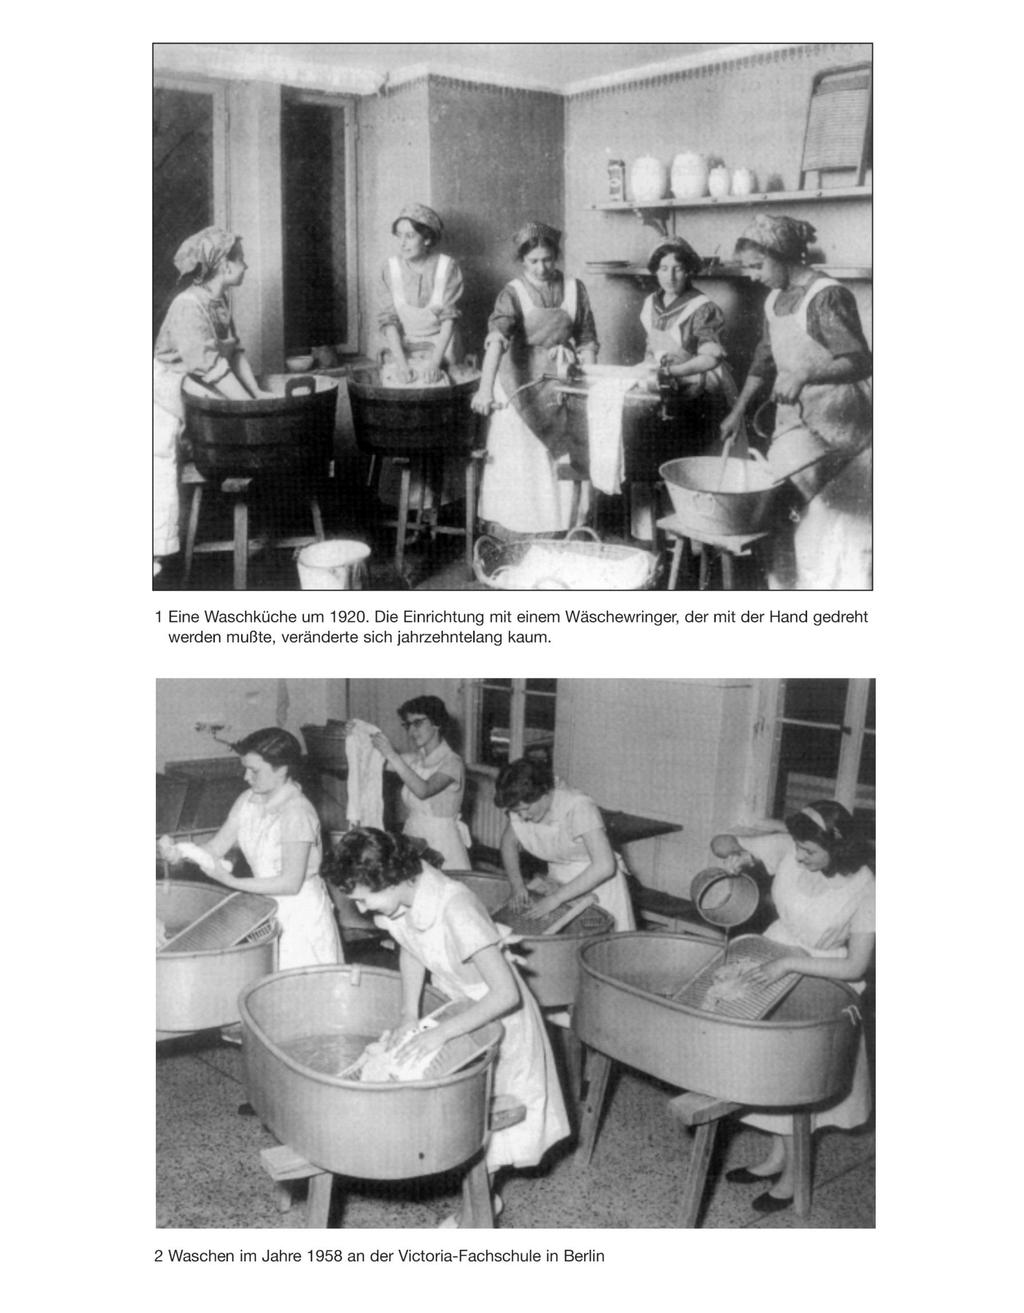 1 Vergleich der Waschverfahren früher und heute